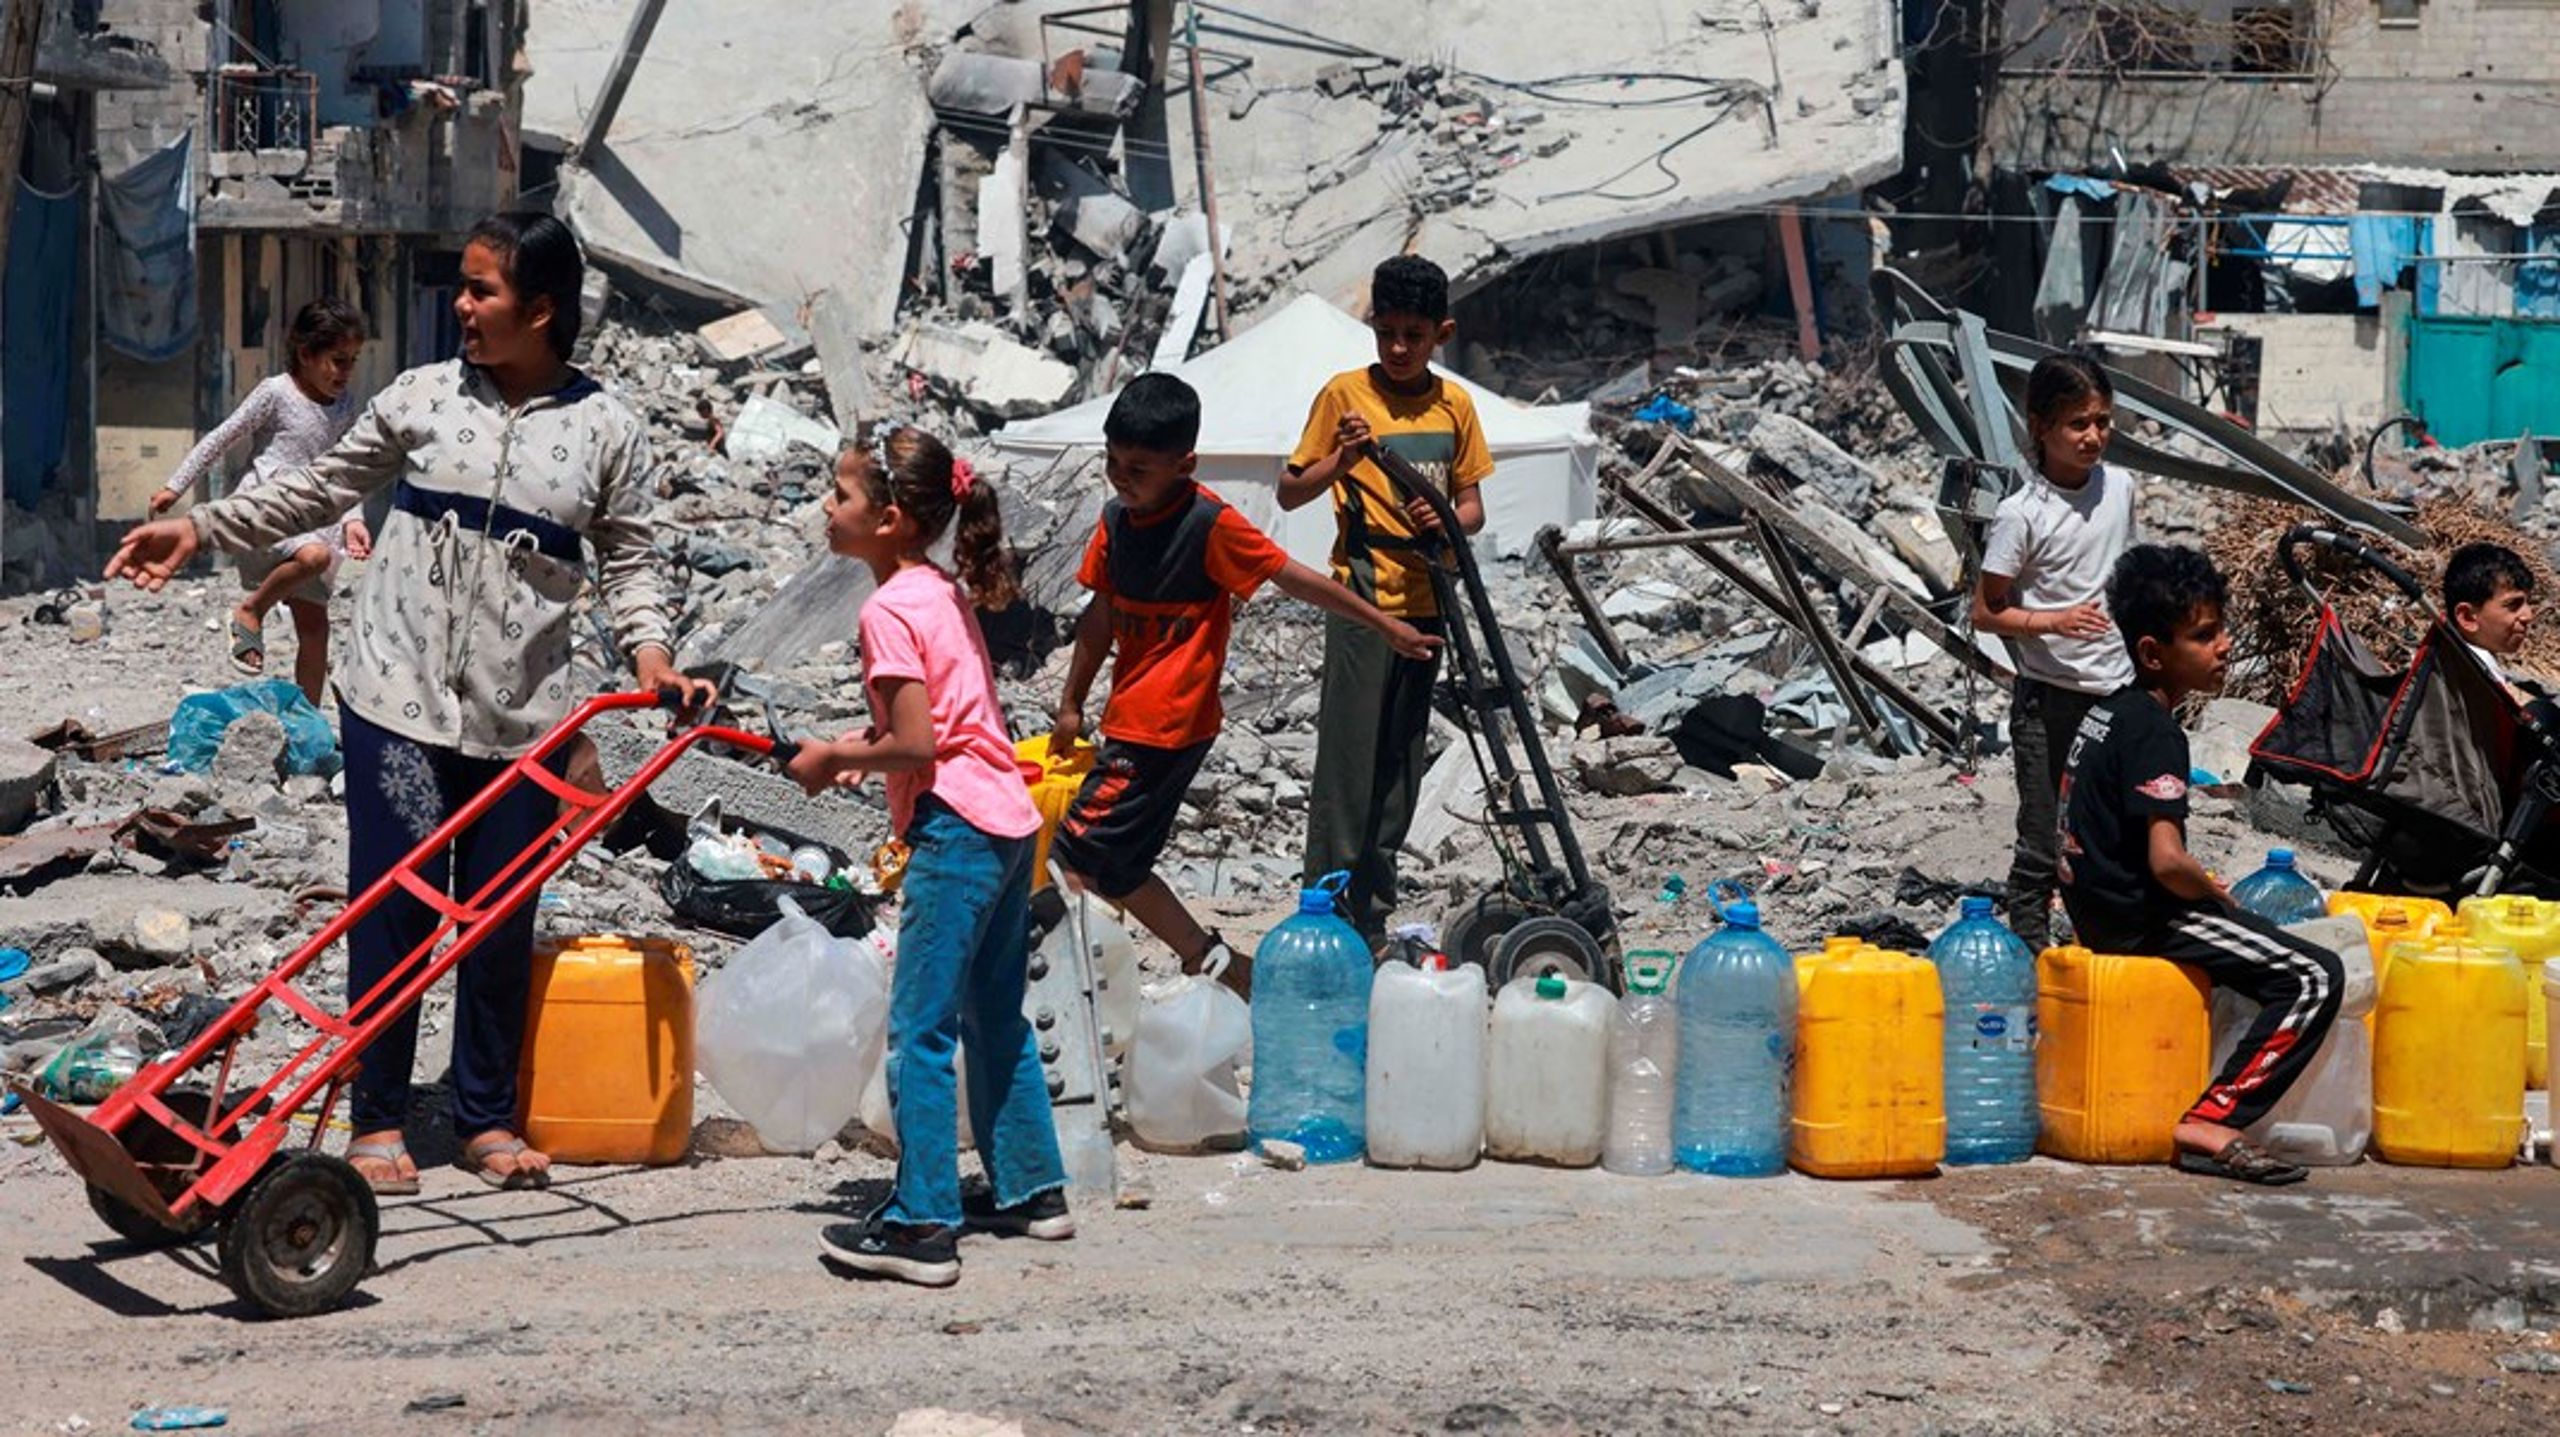 Indsamlingen, der startede den igangværende diskussion om terrorfinansiering gennem indsamlinger, ville have støttet de civile ofre i Gaza. I stedet gik pengene til organisationer, som sympatiserer med den palæstinensiske terrororganisation, Hamas. Arkivfoto fra Gaza.